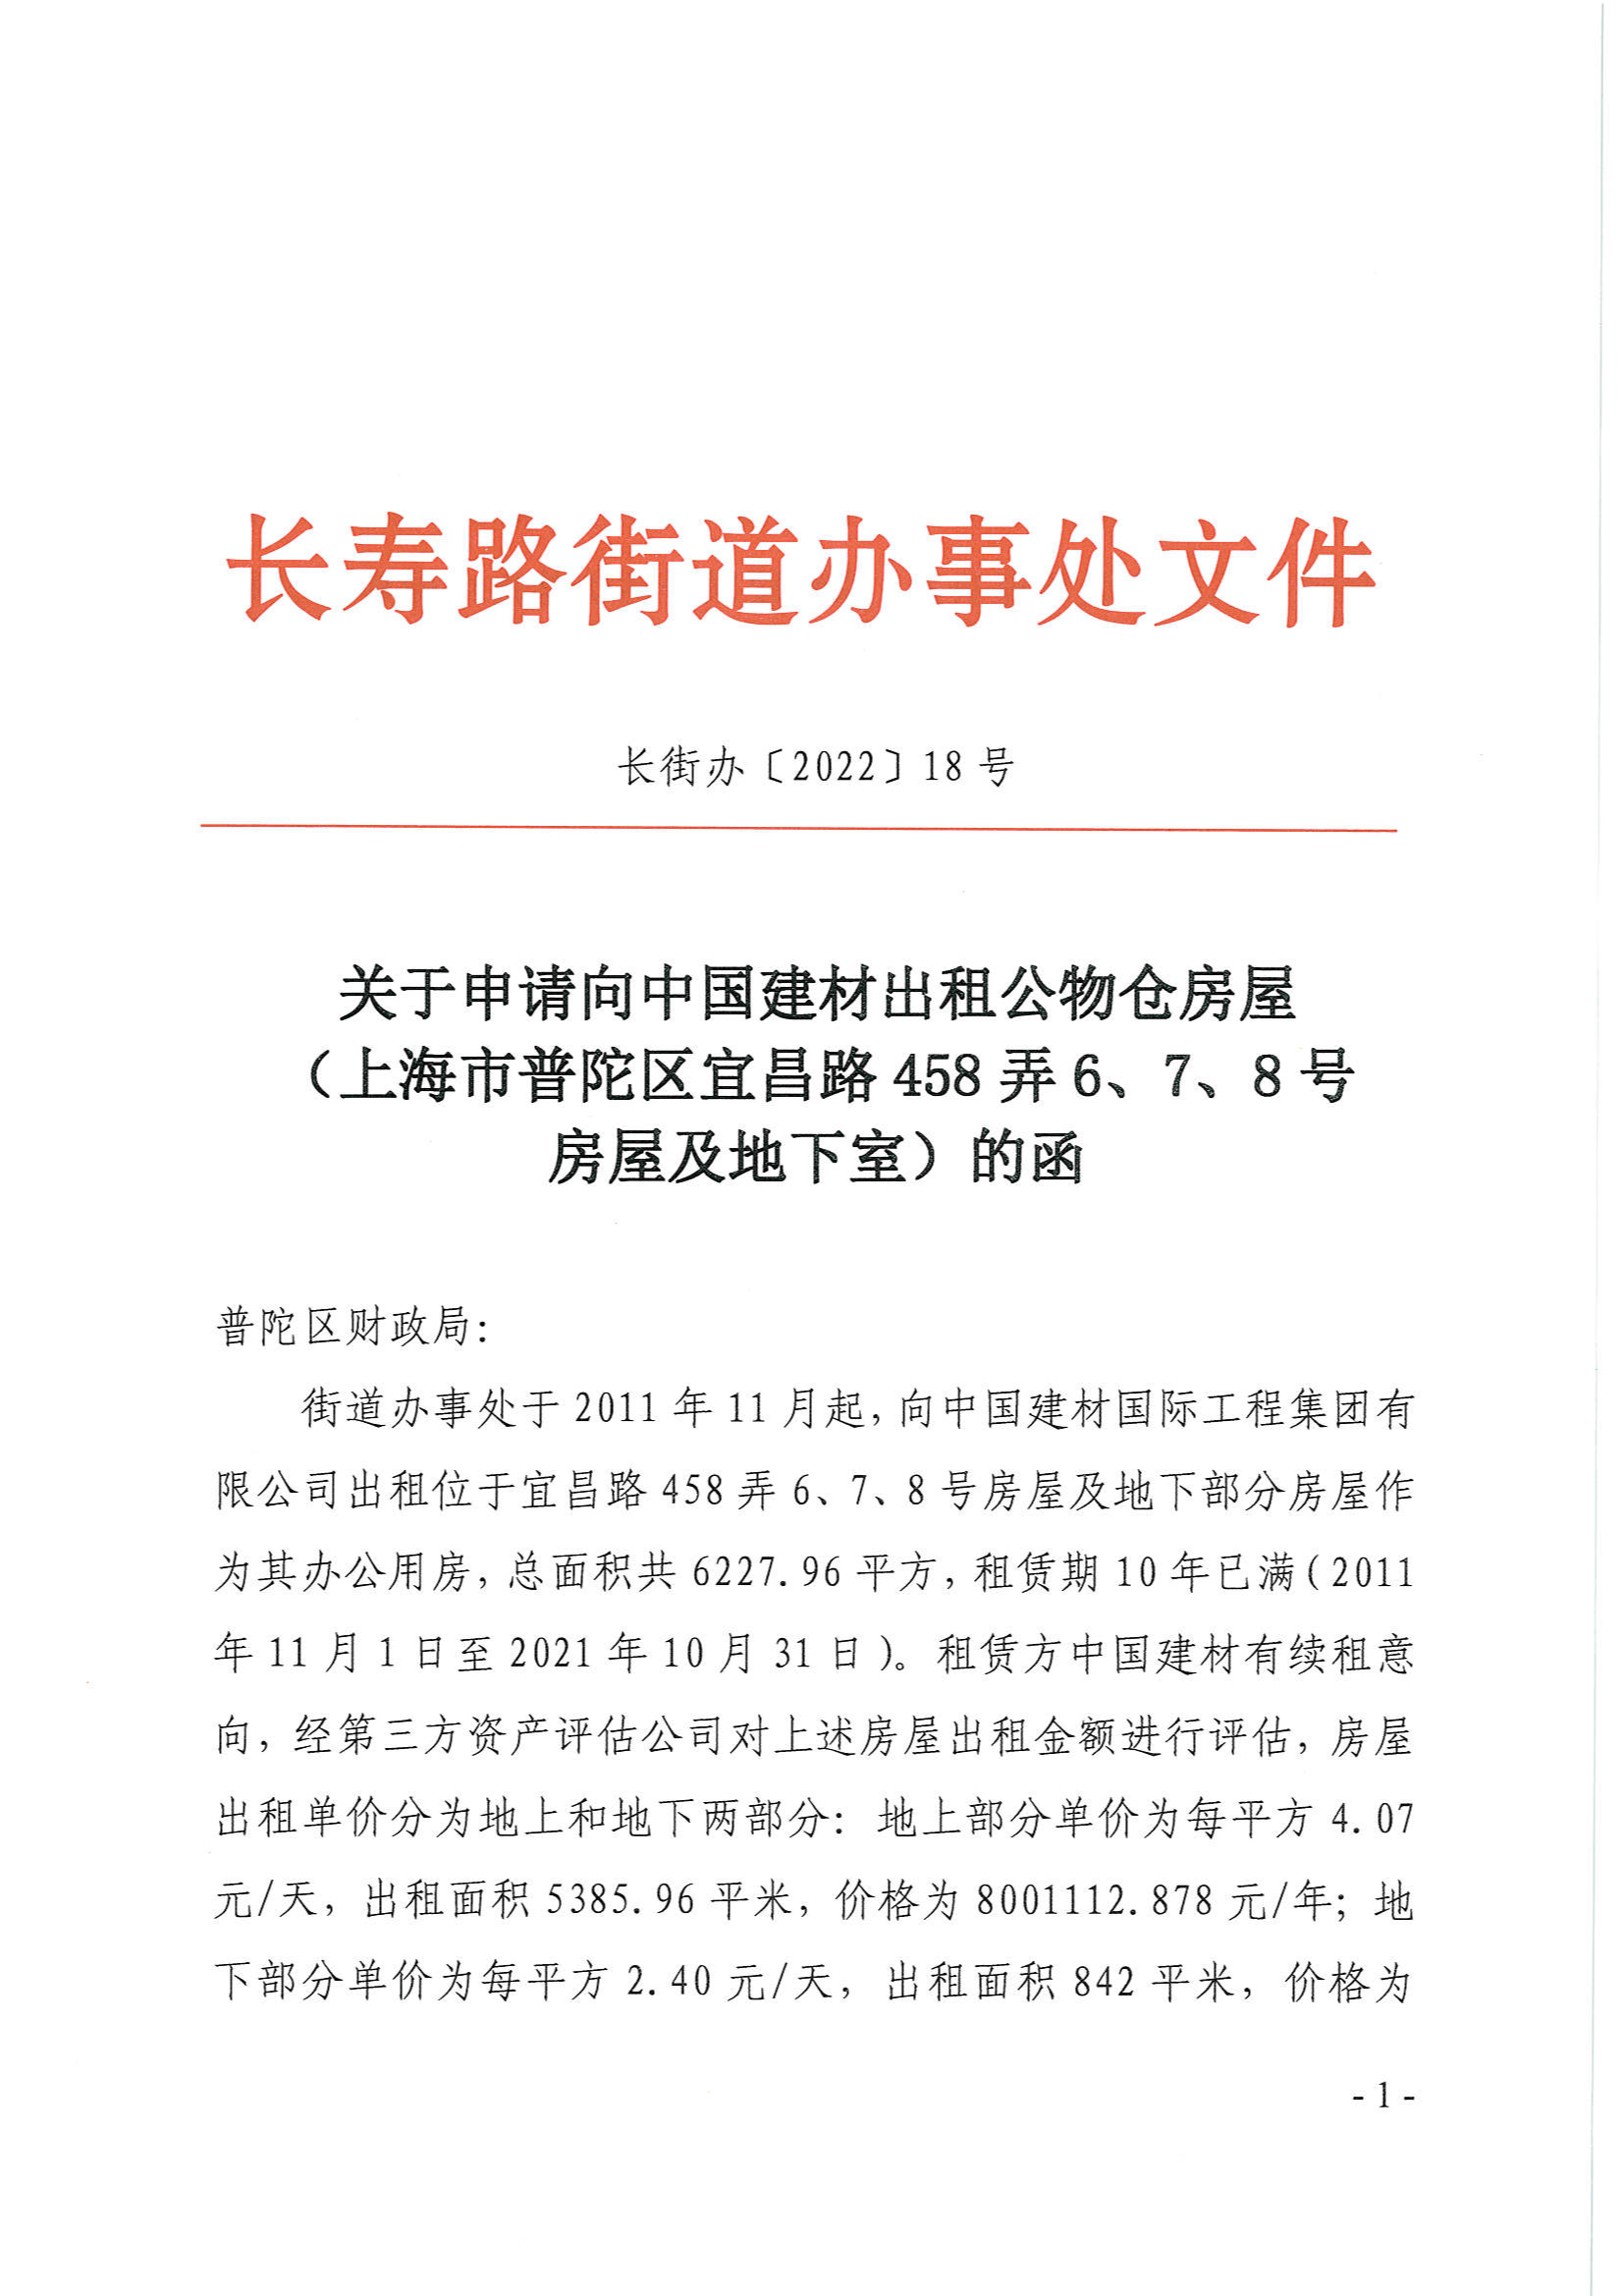 关于申请向中国建材出租公物仓房屋（上海市普陀区宜昌路458弄6、7、8号 房屋及地下室）的函